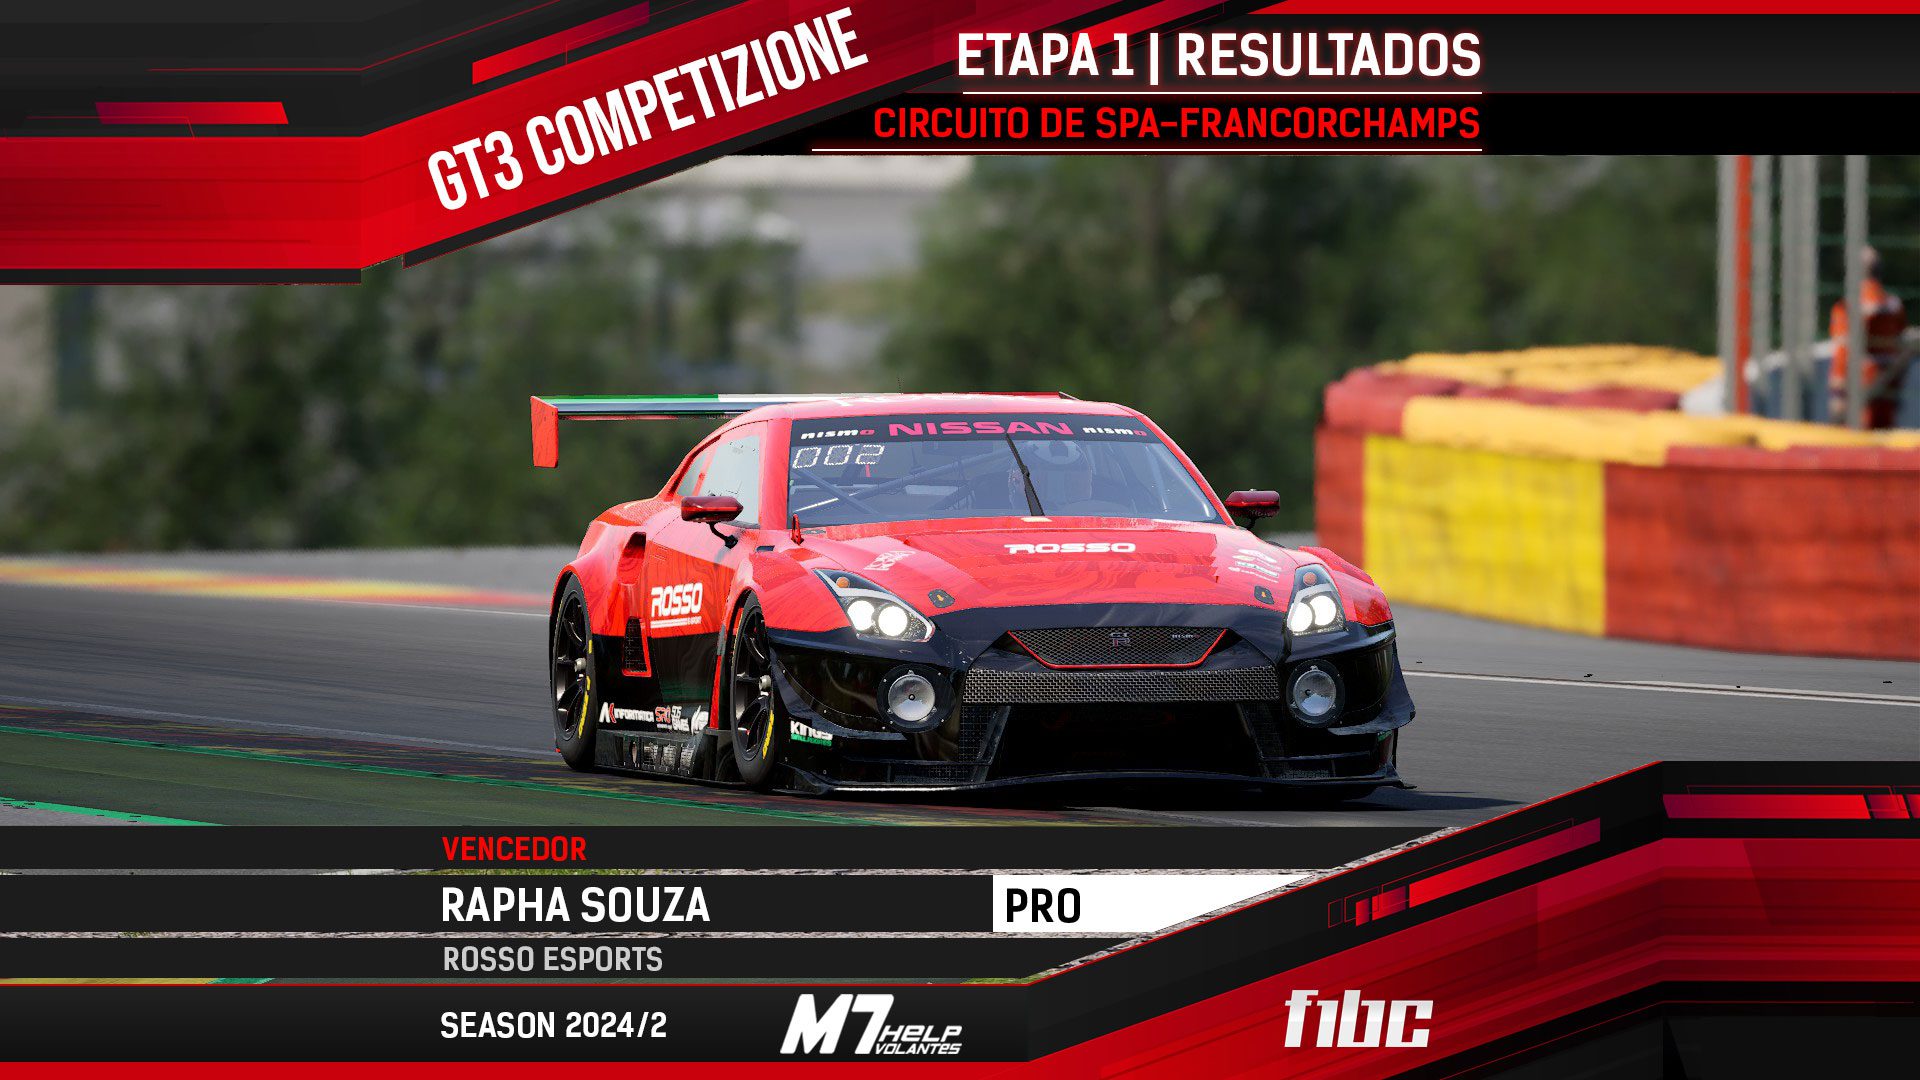 F1BC GT3 Competizione: Rapha Souza vence na abertura em Spa-Francorchamps